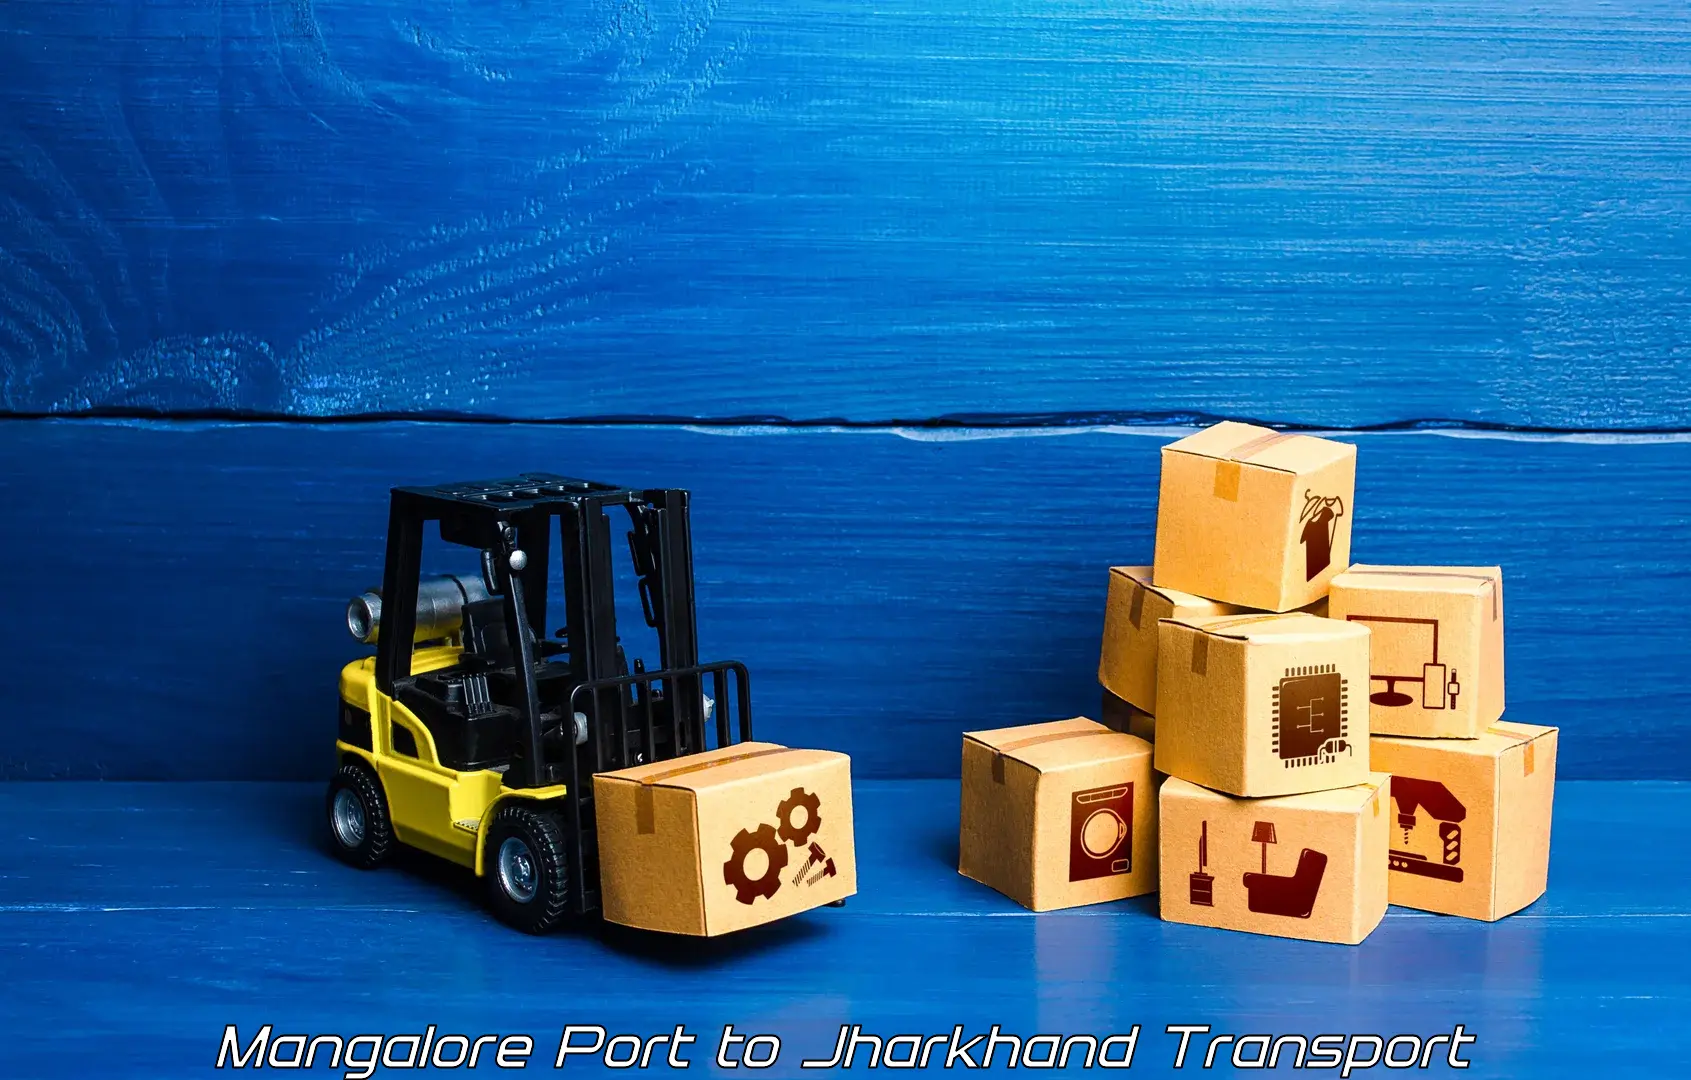 Transport in sharing Mangalore Port to Bokaro